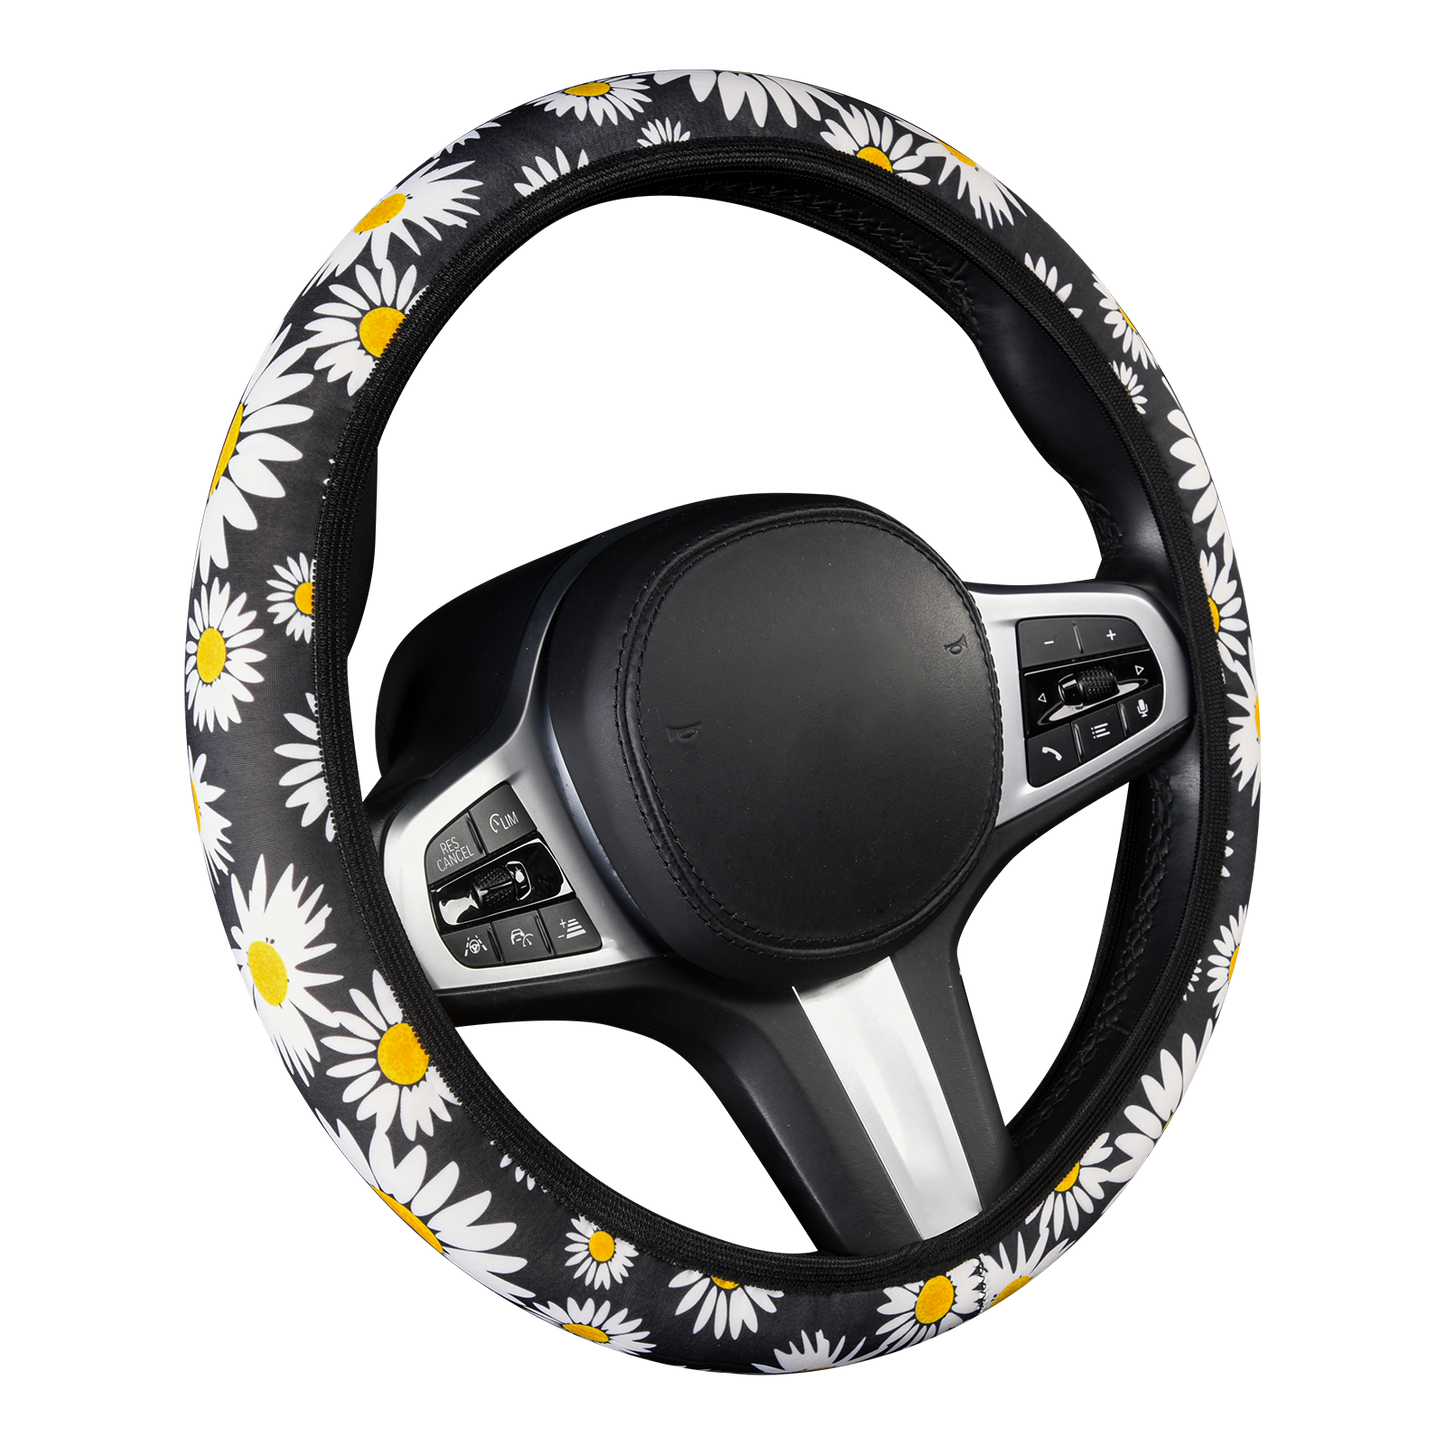 Beautiful Sunflower Car Steering Wheel Cover for Women Girls Men Universal 15 Inch Anti Slip Breathable Neoprene Cute